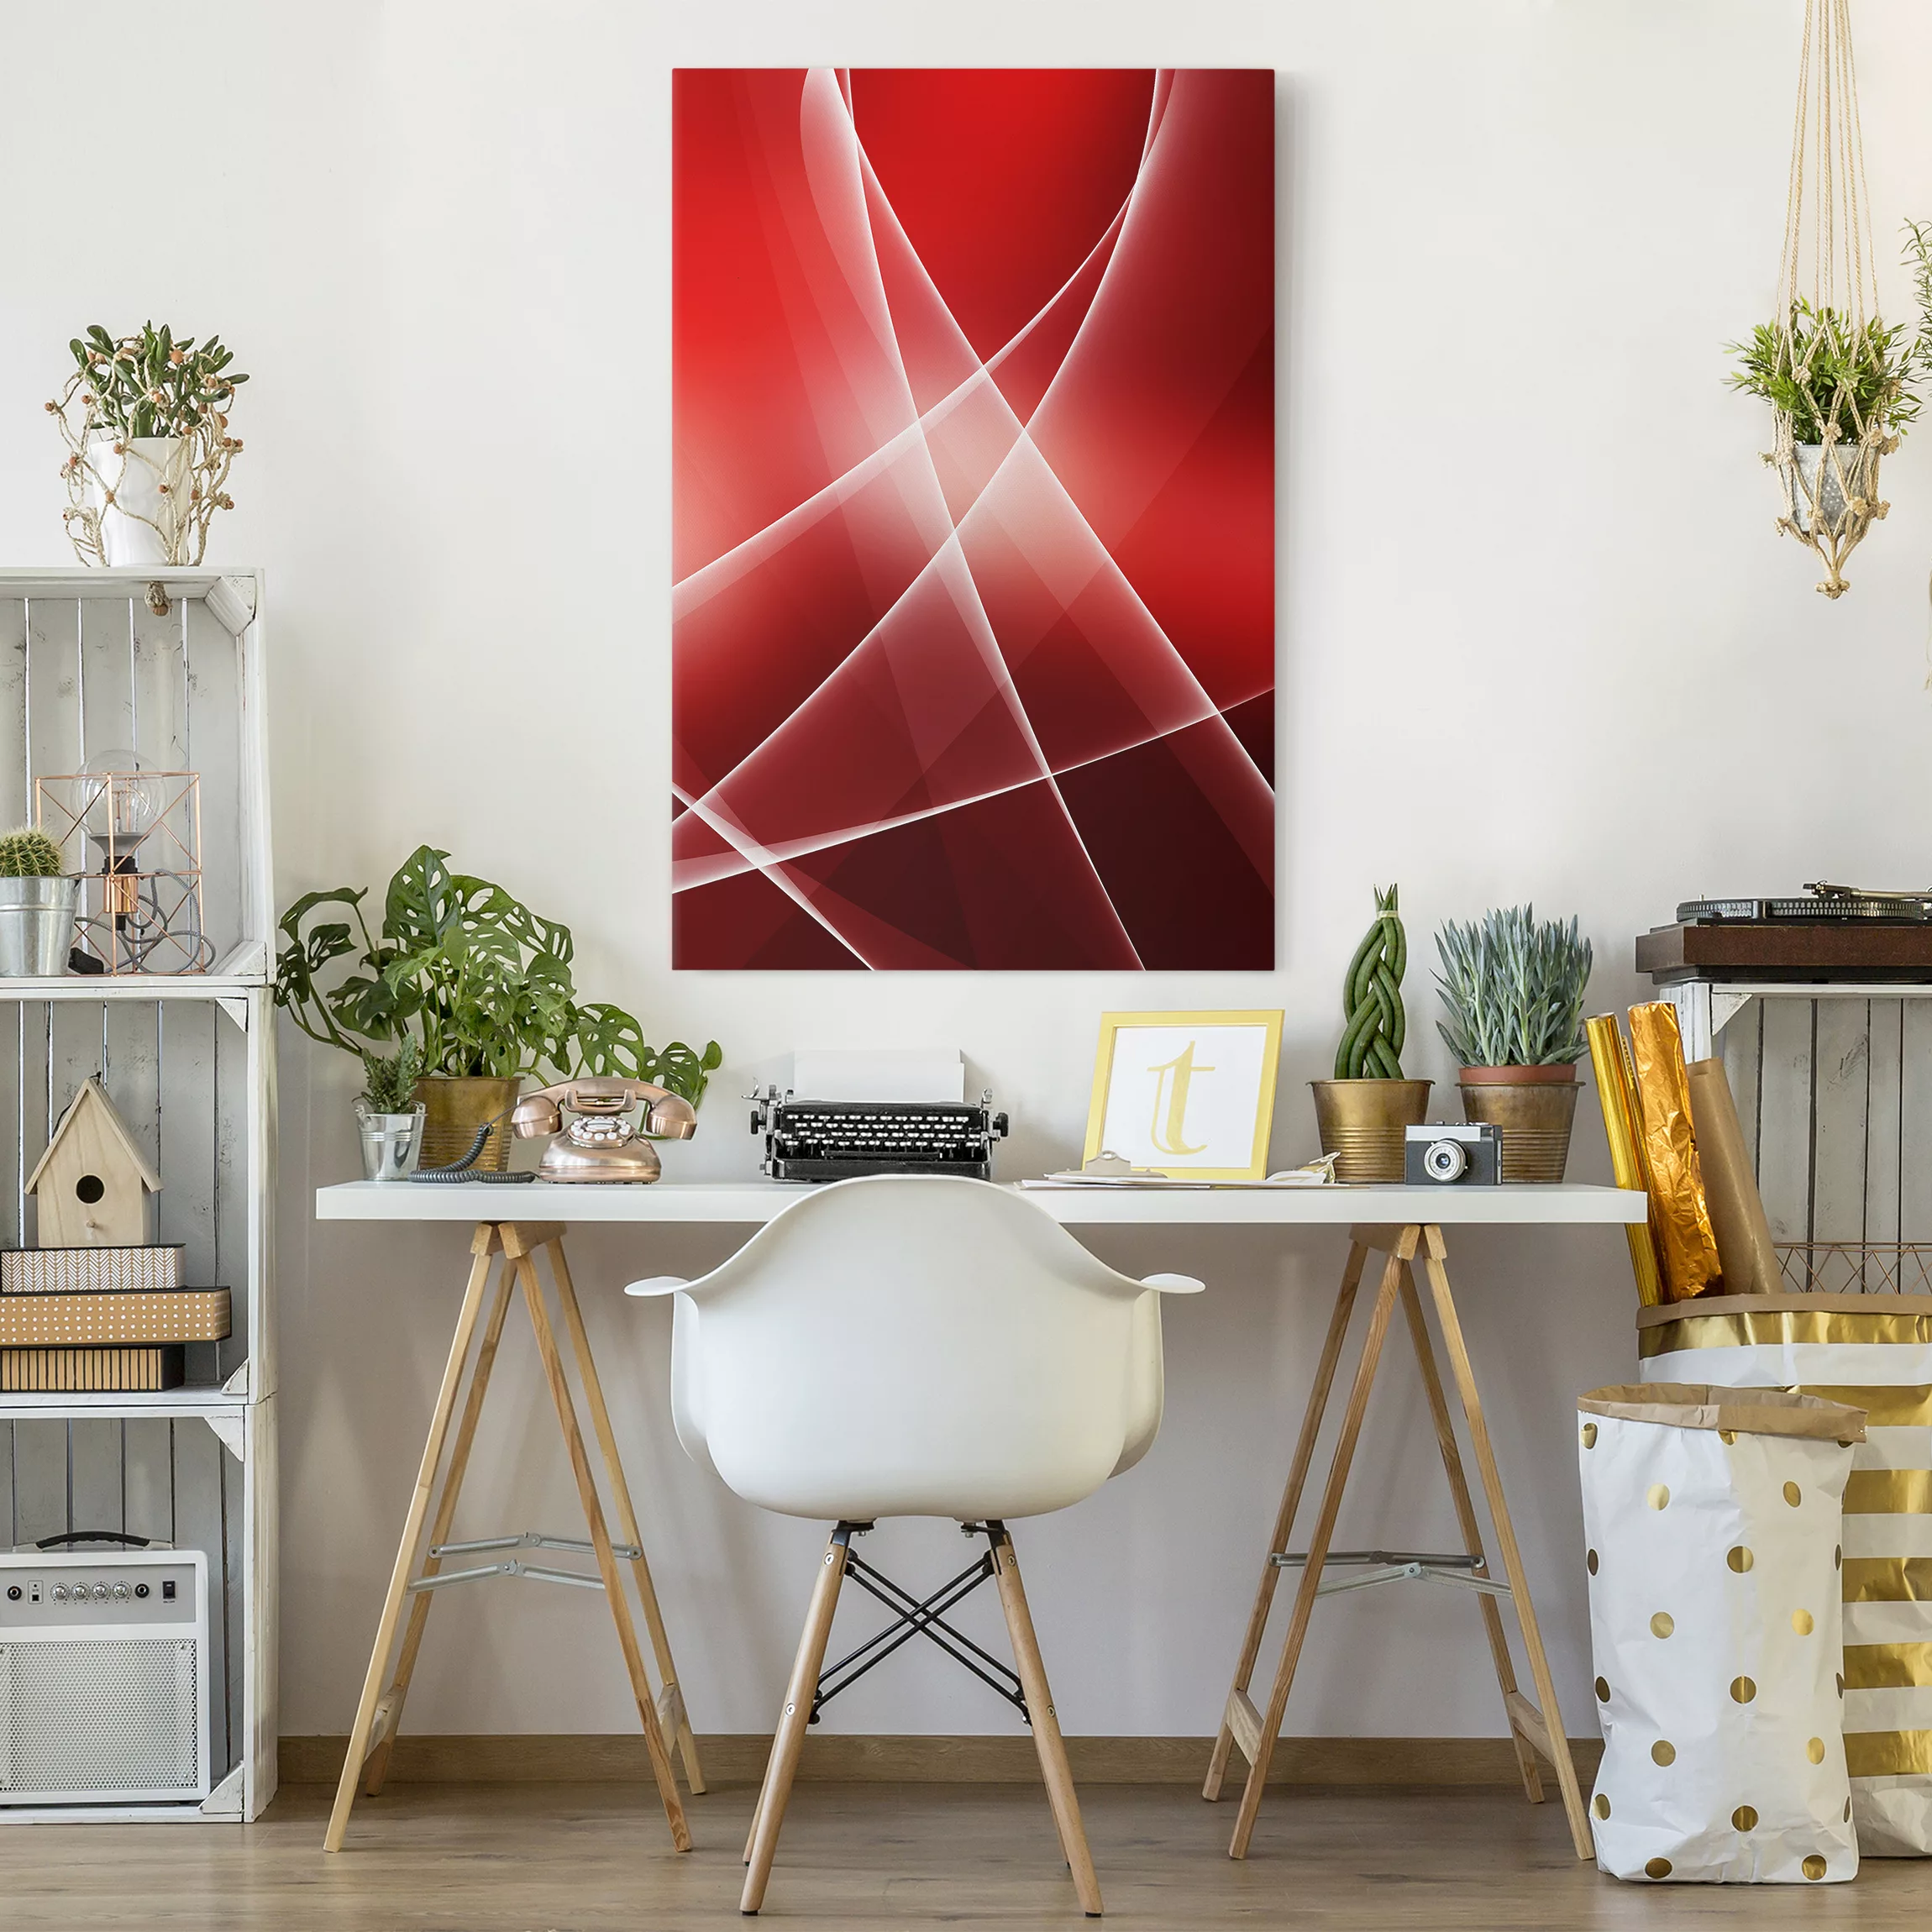 Leinwandbild Abstrakt - Hochformat Red Reflection günstig online kaufen